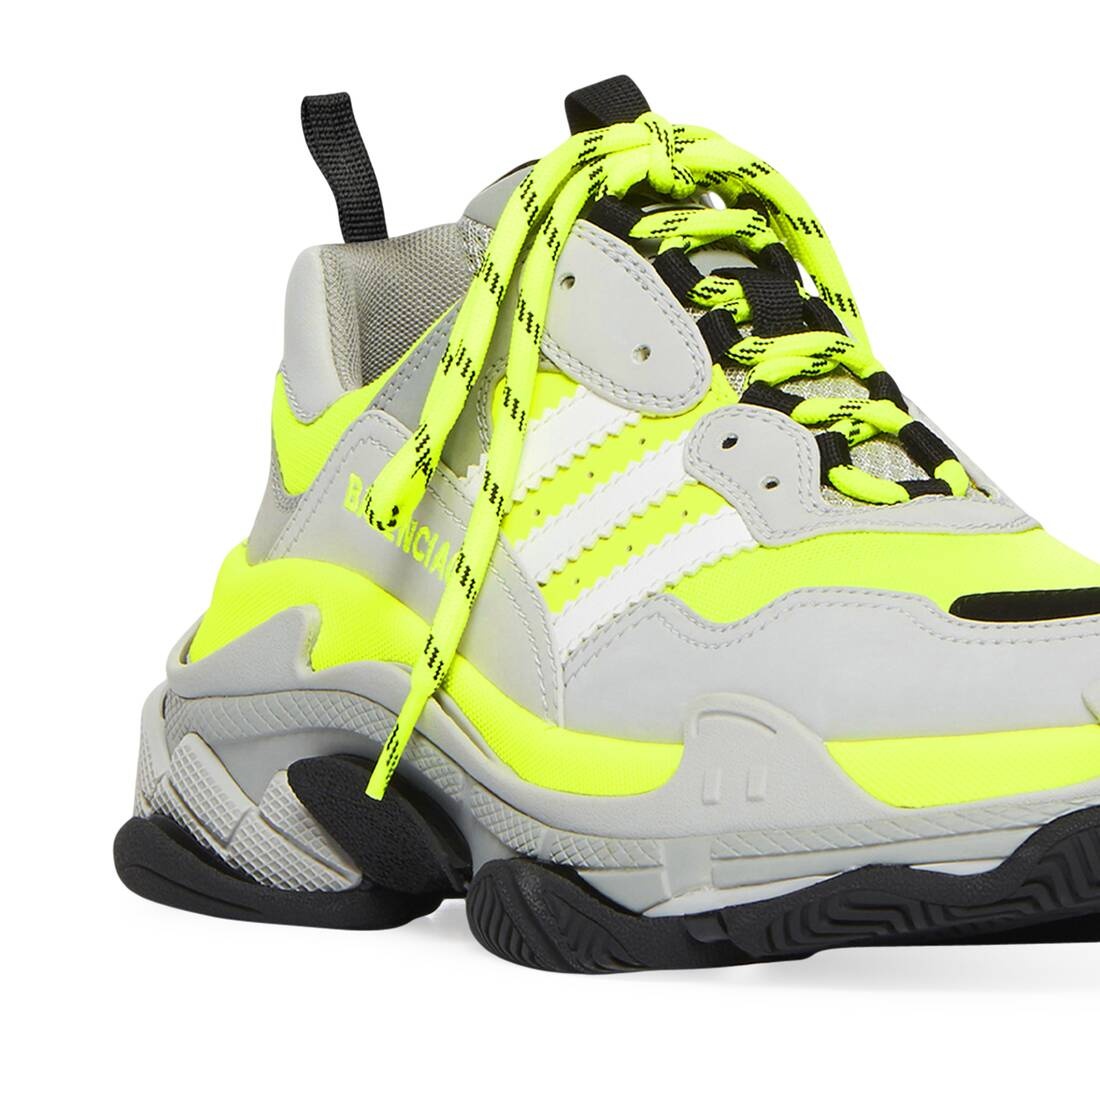 Men's Balenciaga / Adidas Triple S Sneaker in Fluo Yellow - 5